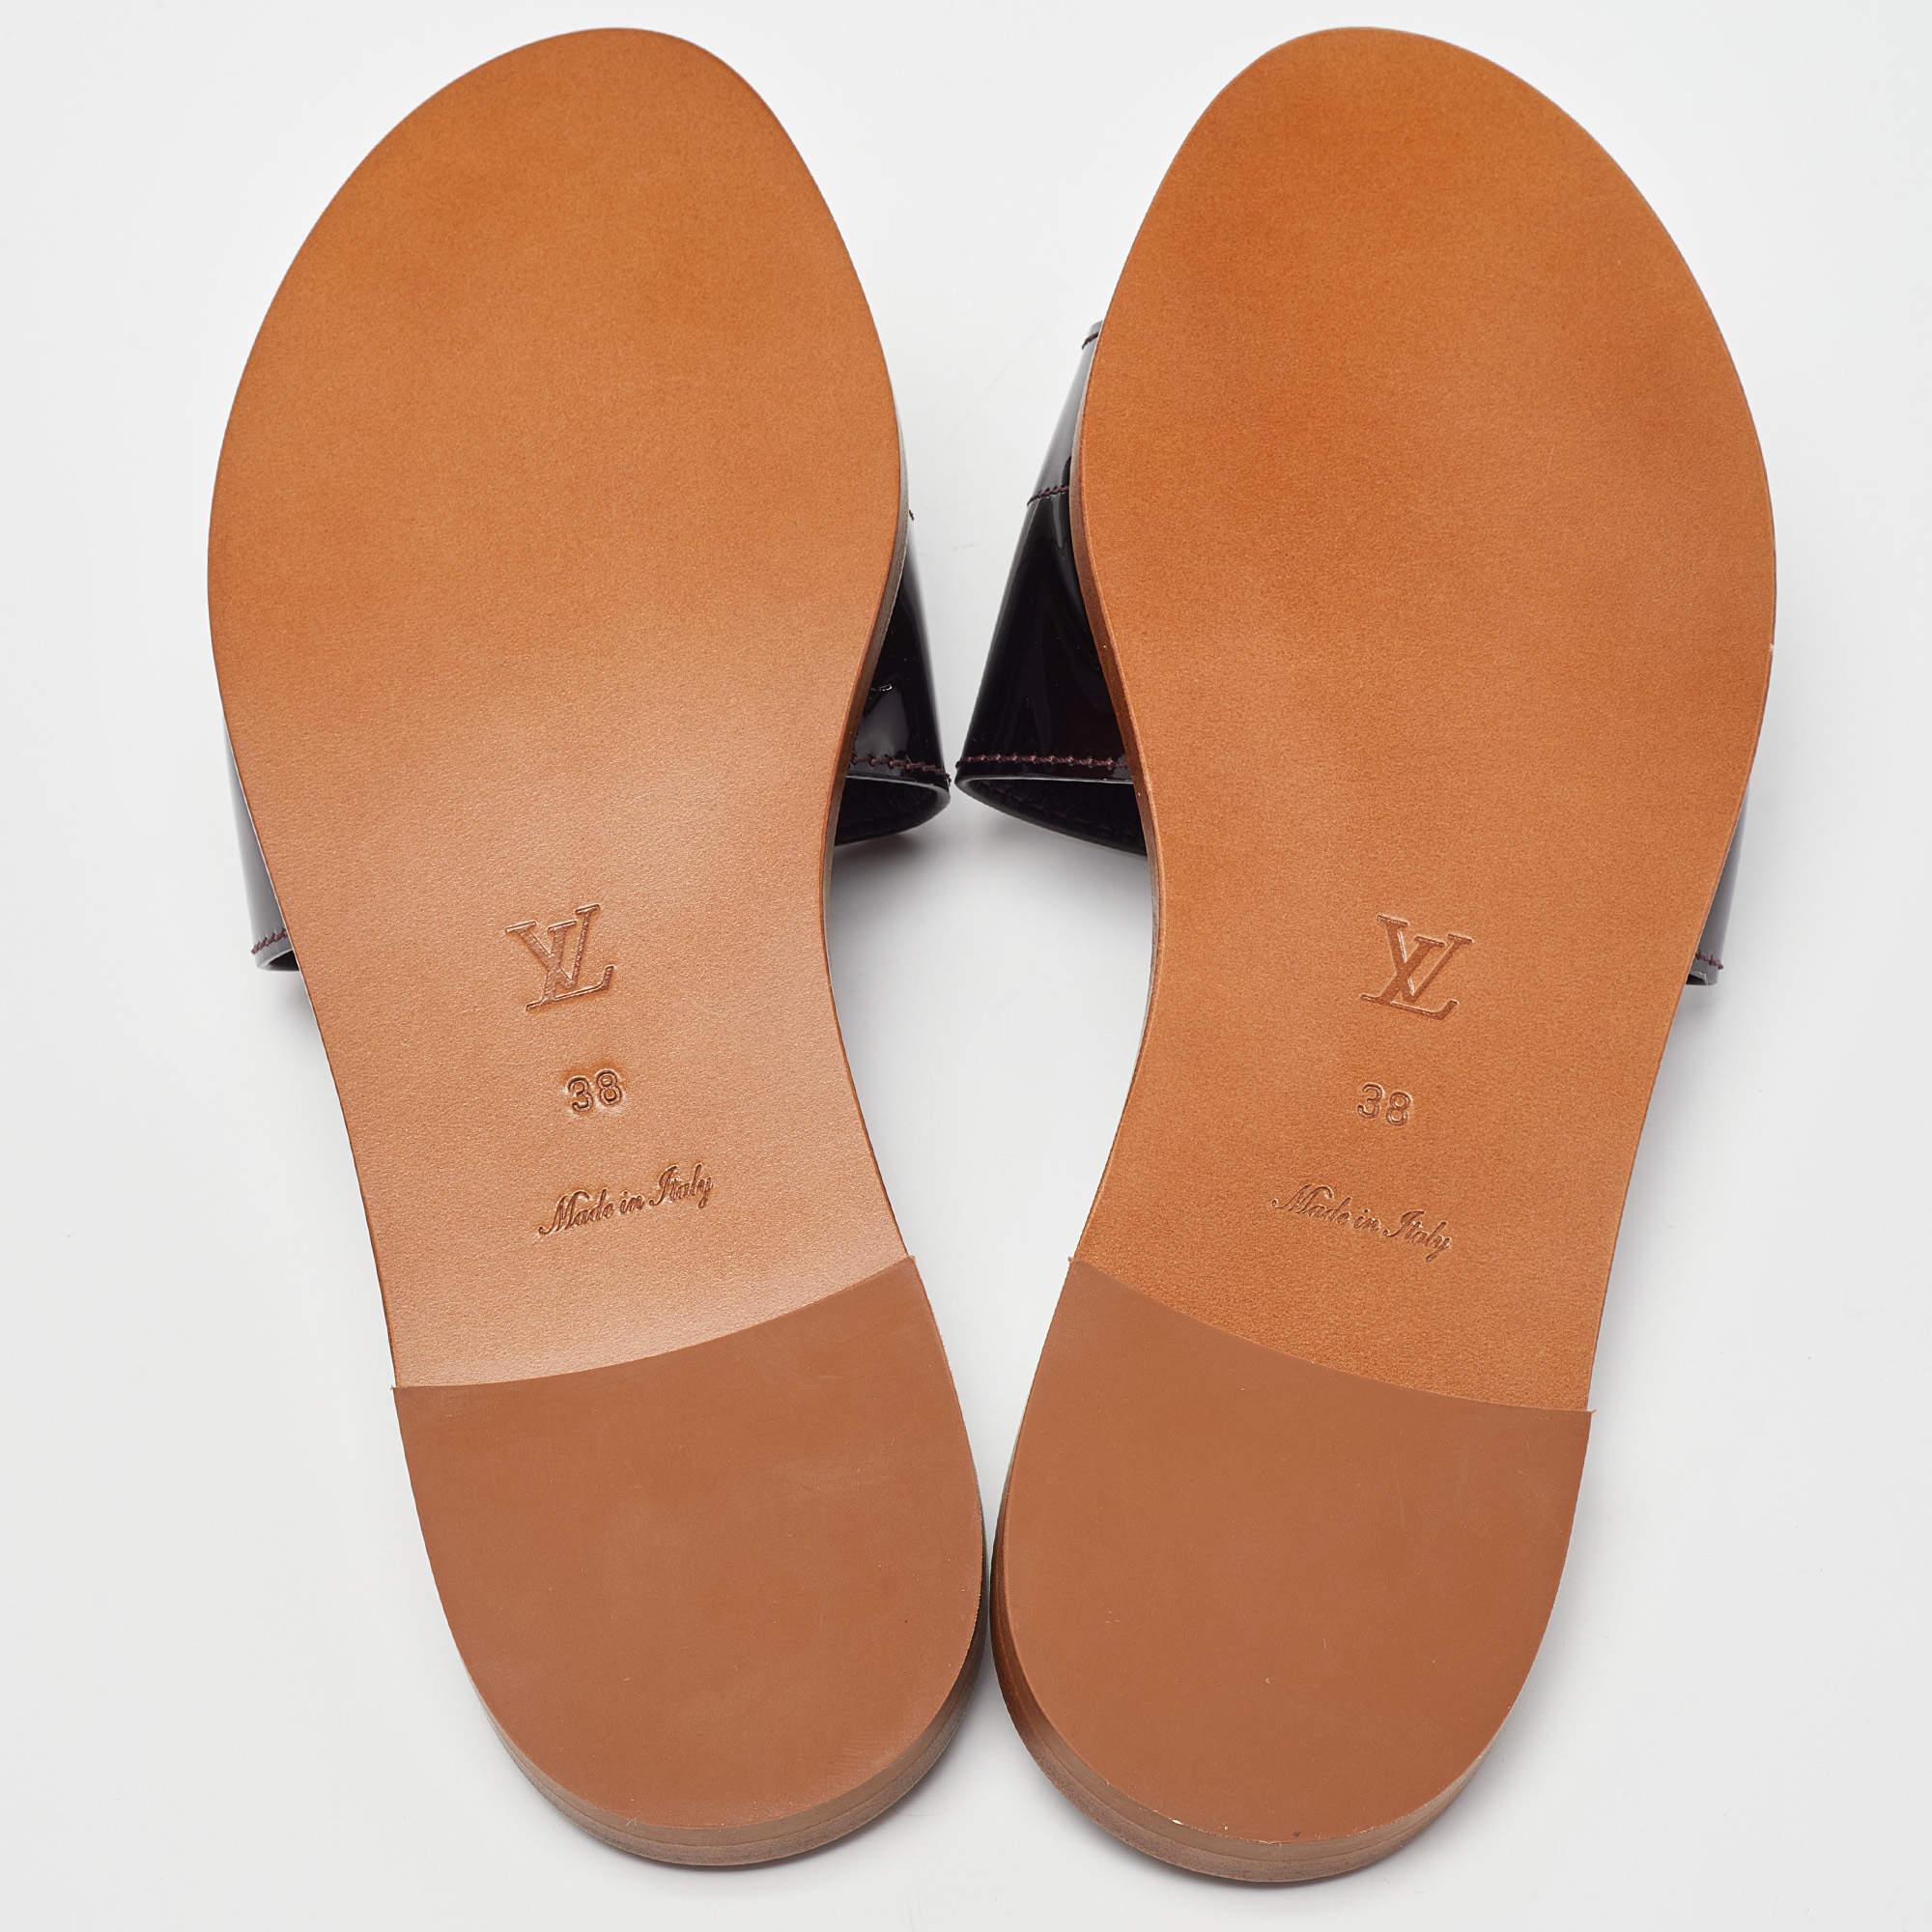 Louis Vuitton Amarante Patent Leather Lock It Flat Sandals Size 38 5